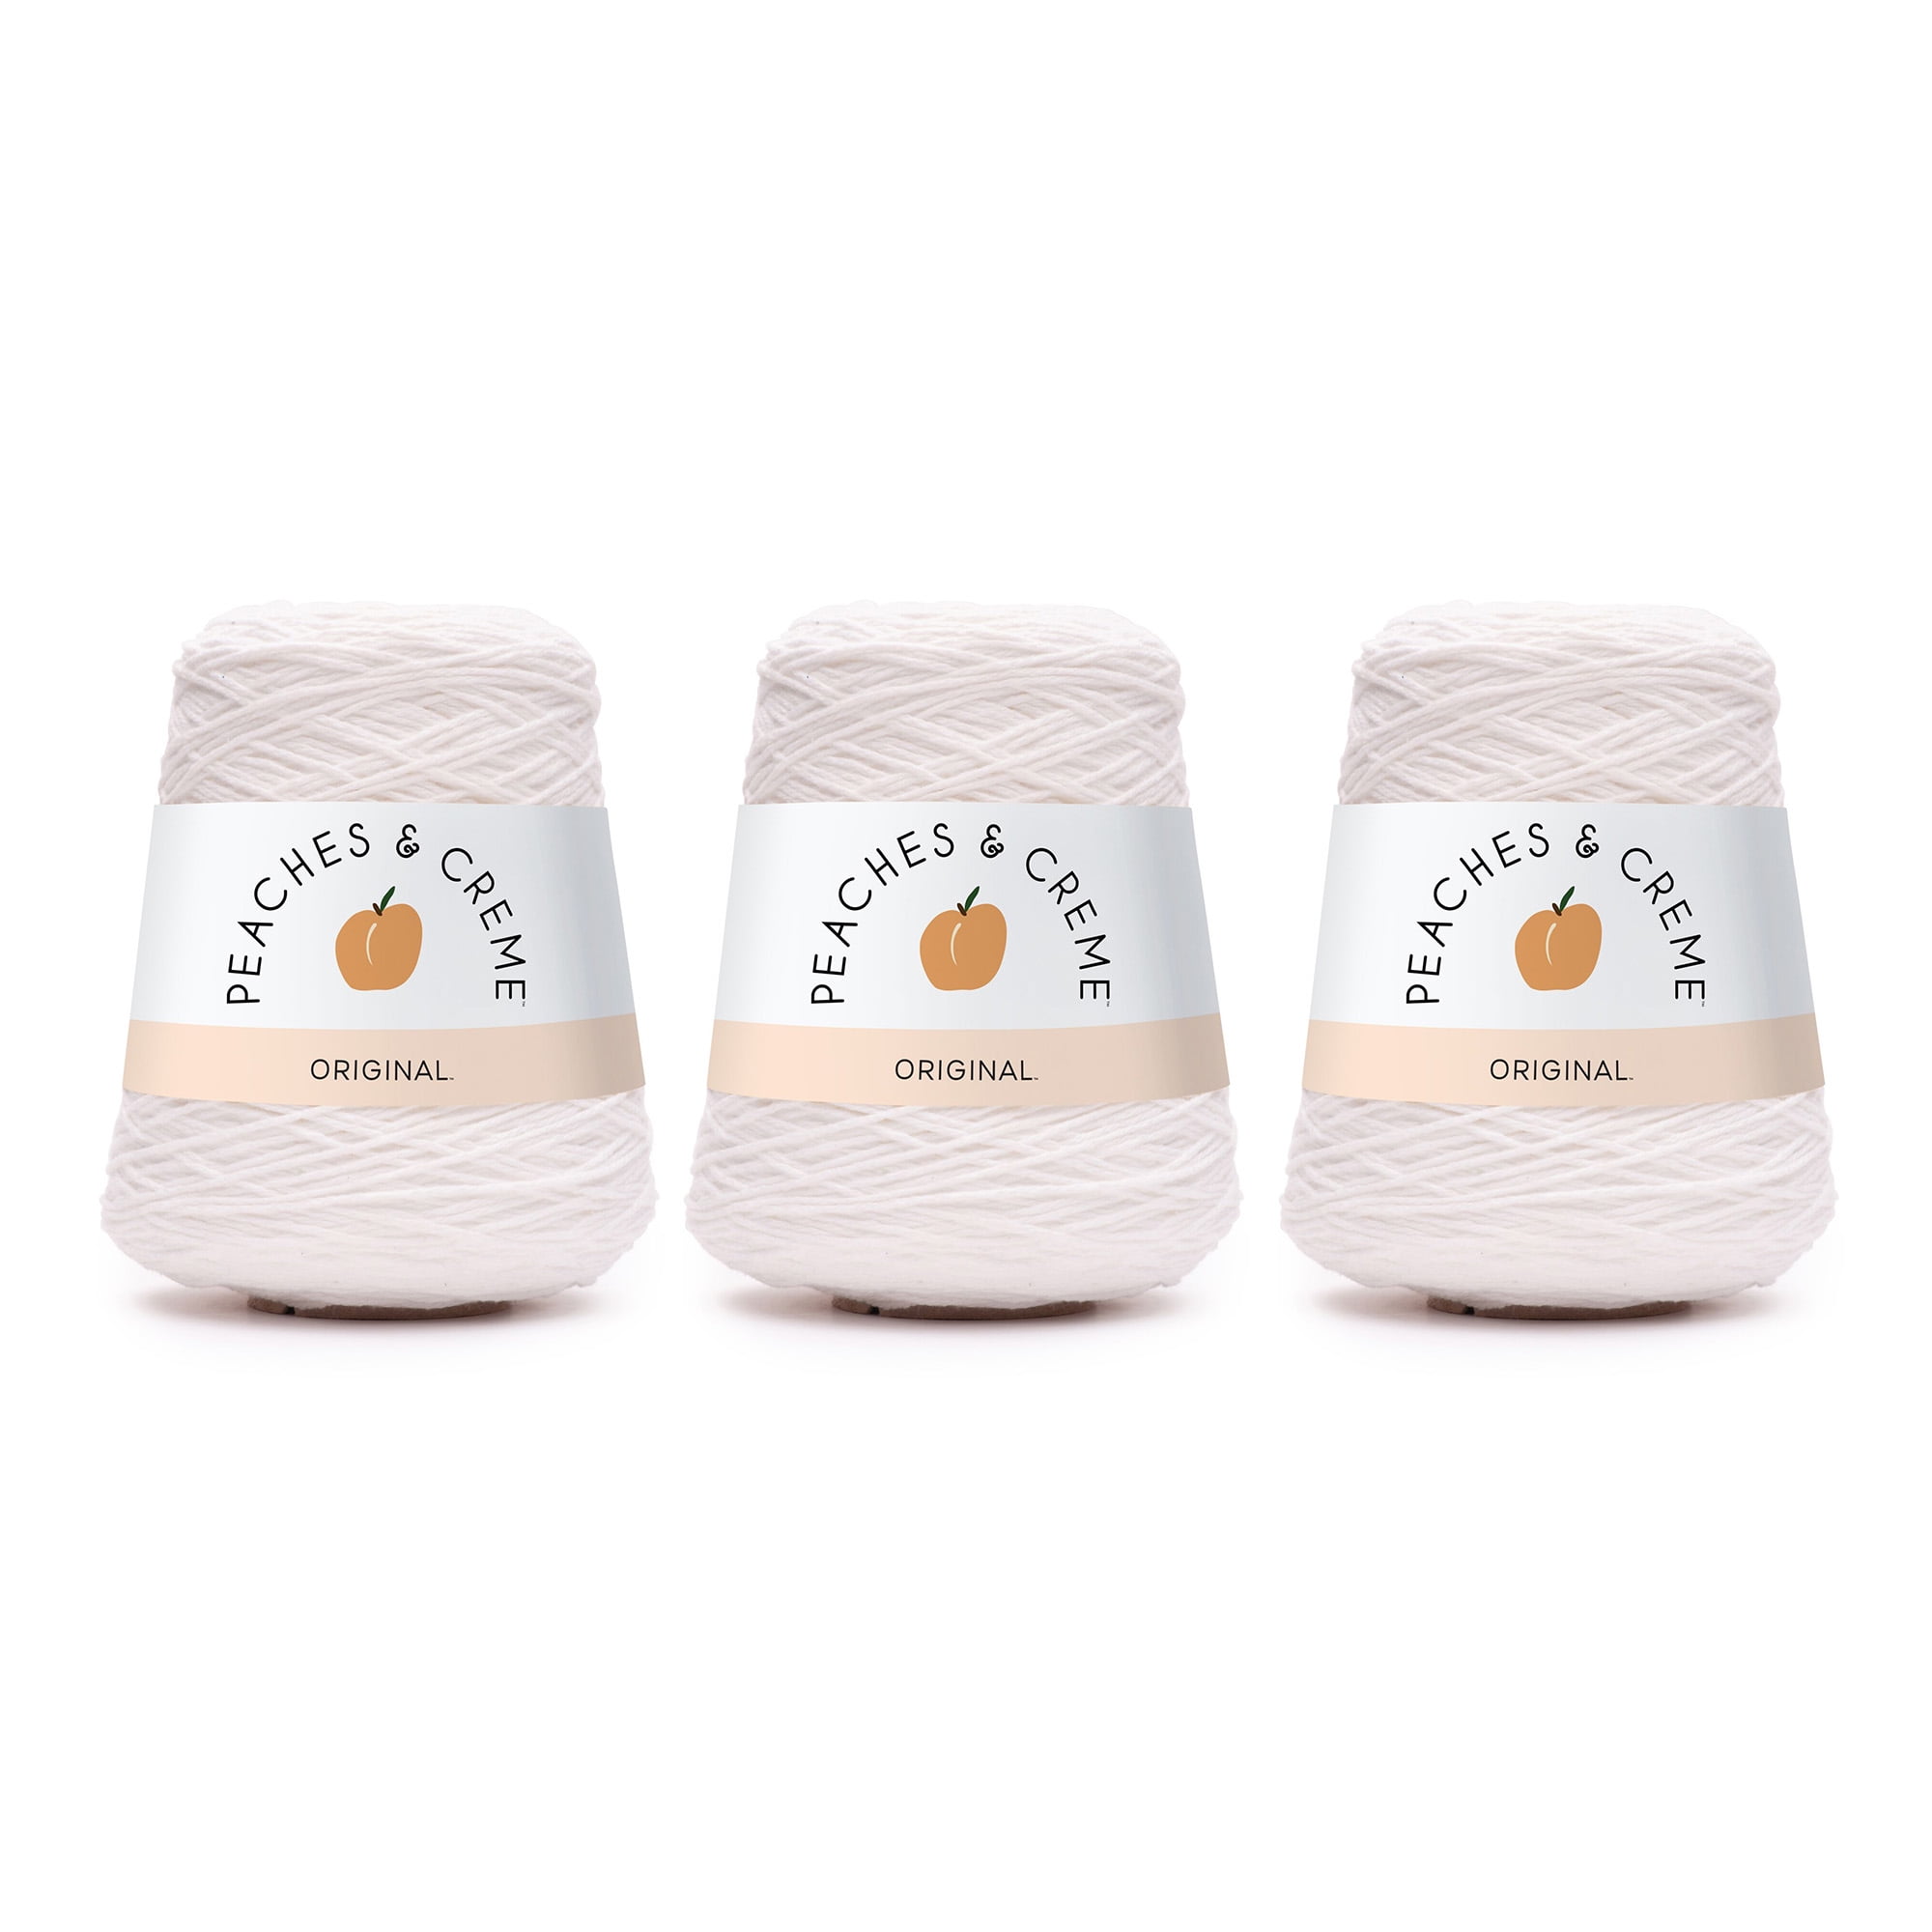 Peaches & Creme (Cream) Cotton Yarn 14 oz. Cone (Seabreeze)